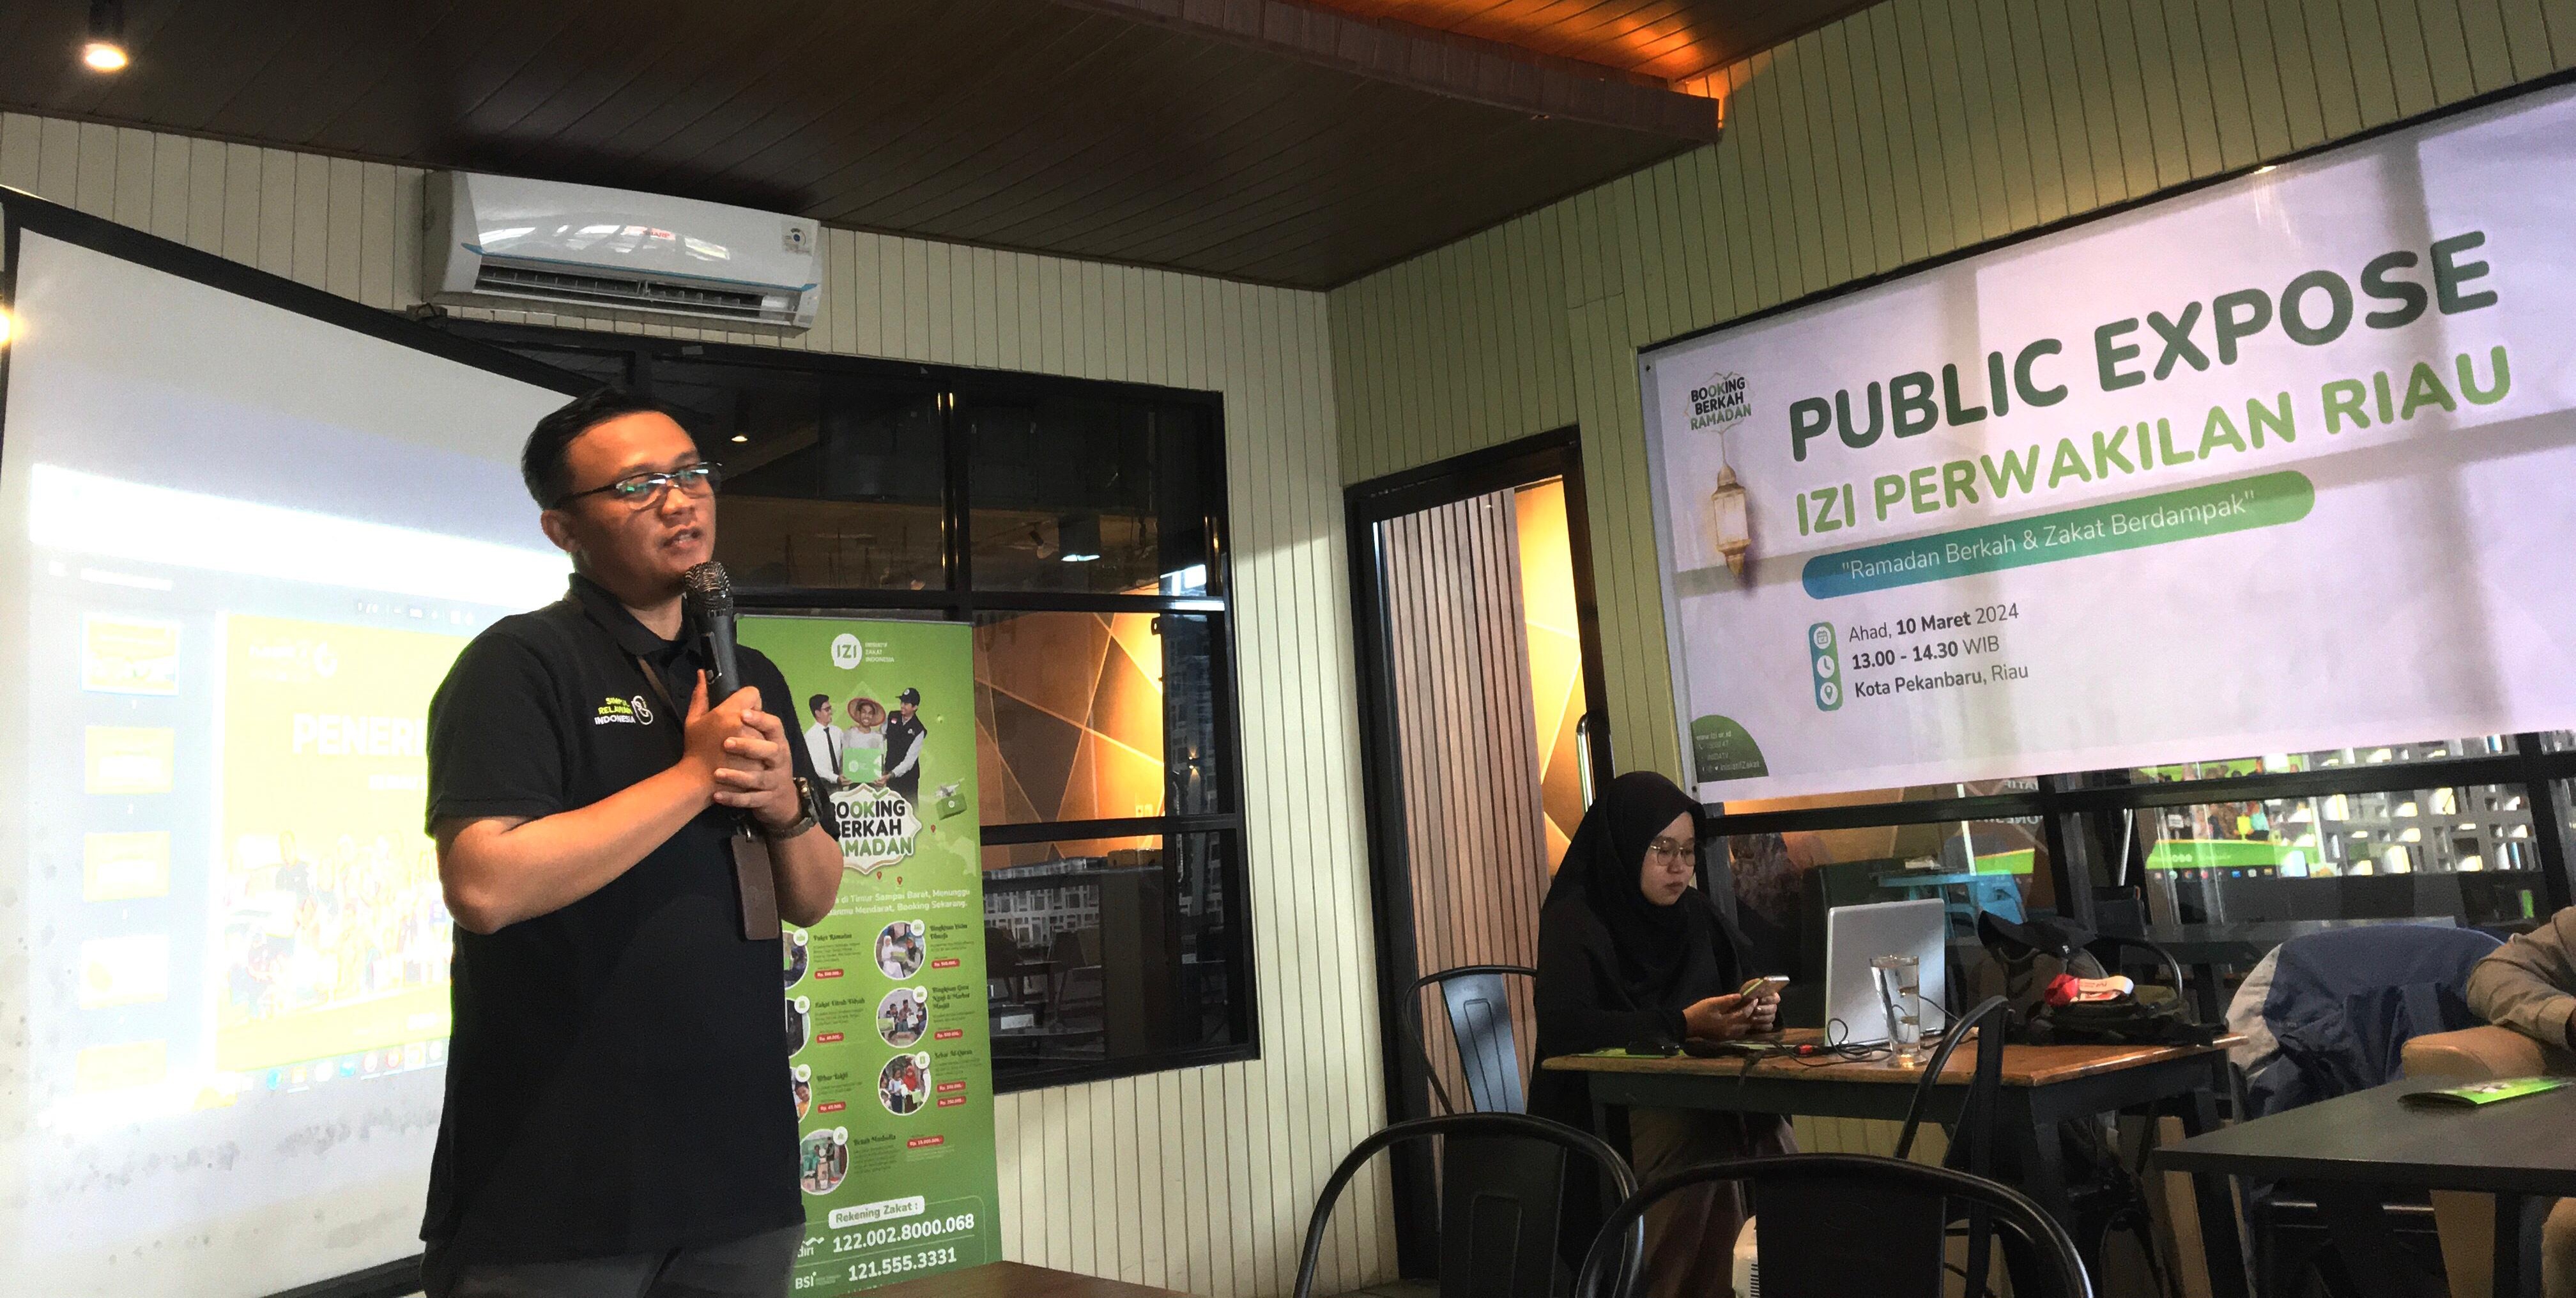 Public Expose ke Media Online, IZI Riau Kampanyekan Ramadhan Berkah & Zakat Berdampak